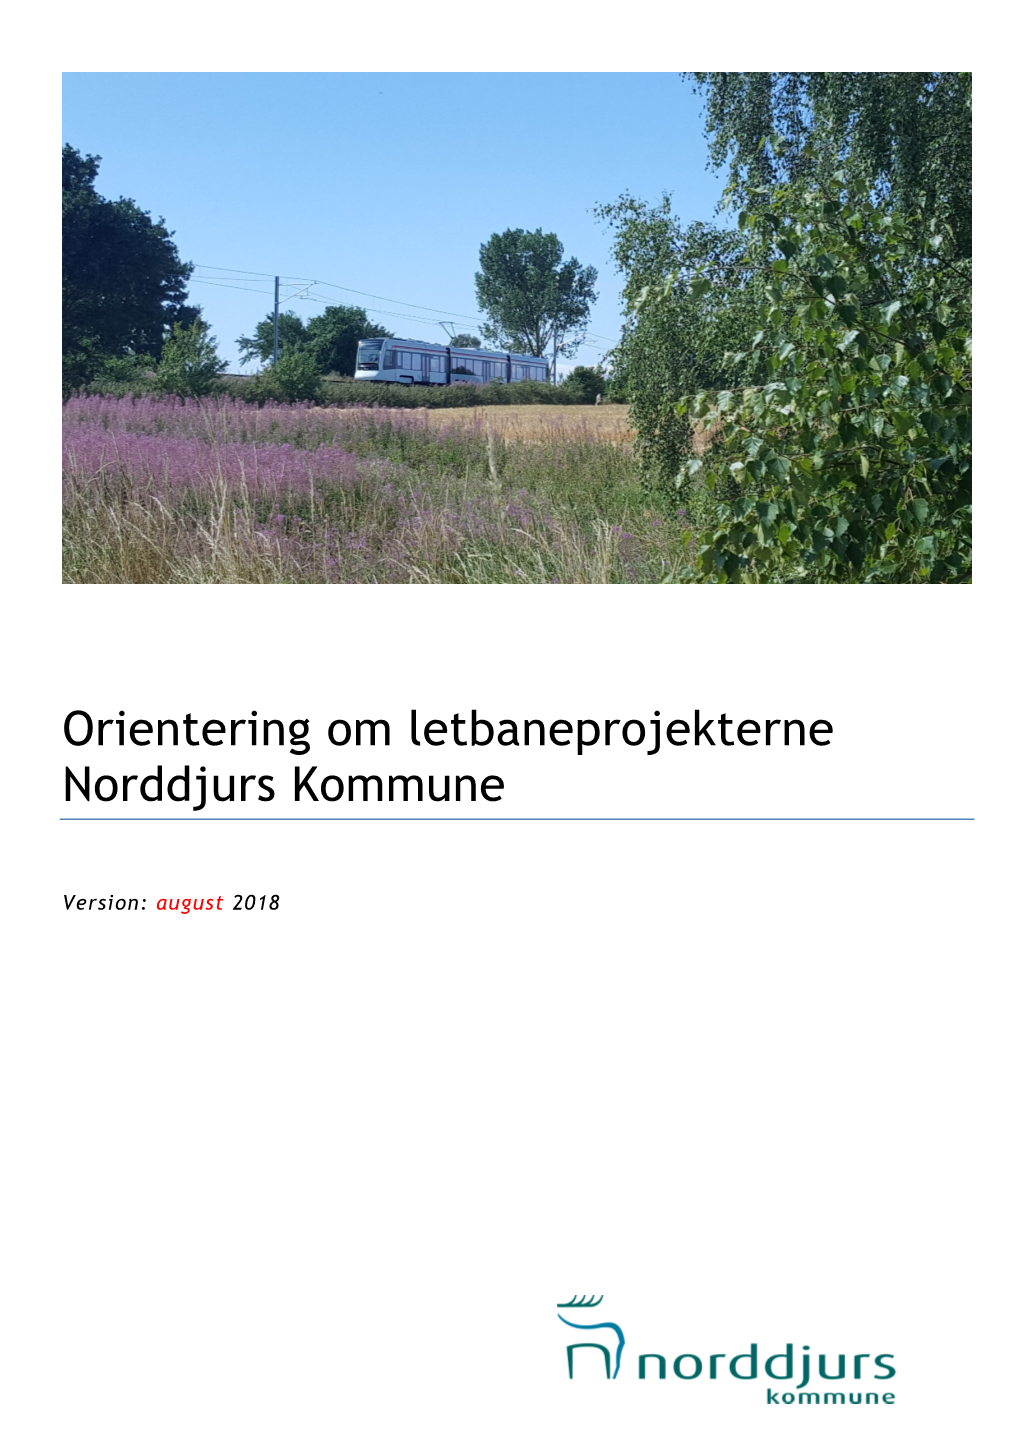 Orientering Om Letbaneprojekterne Norddjurs Kommune